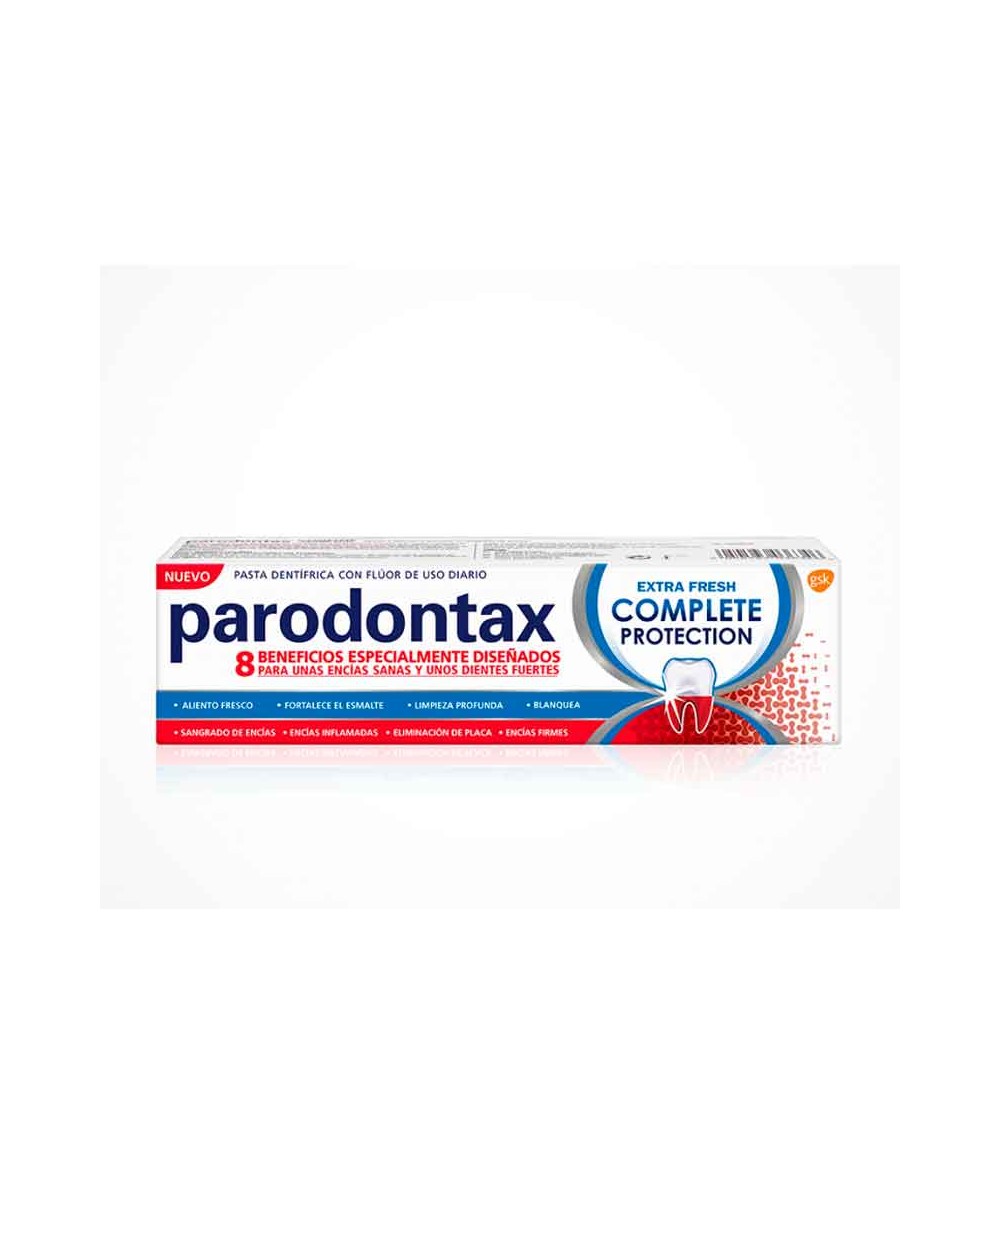 Paradontax Pasta Dentífrica Extra Fresca Protección Completa - 75ml